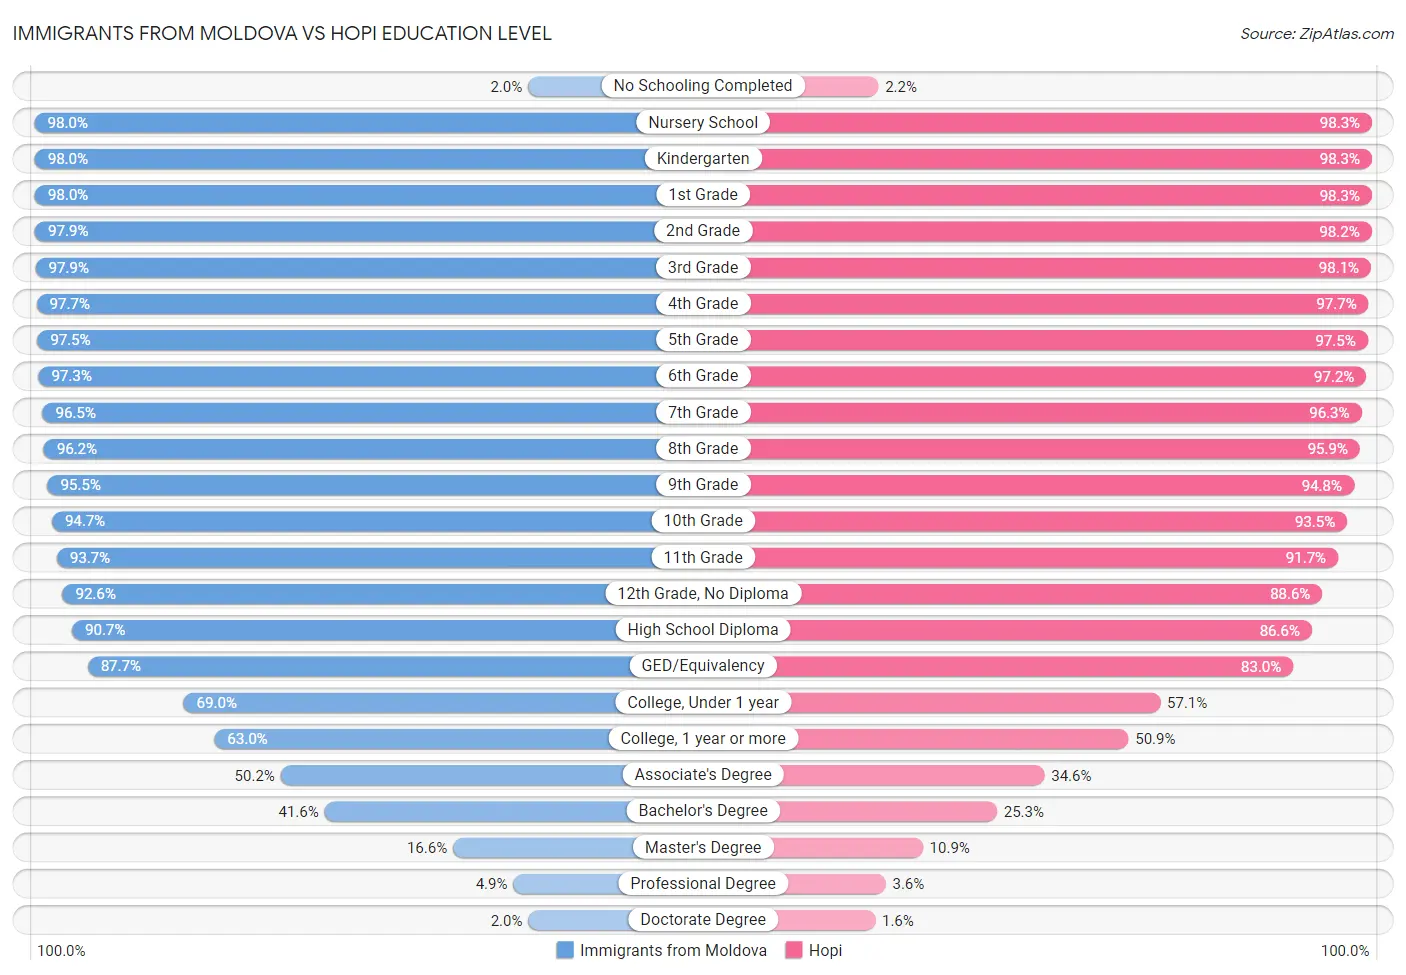 Immigrants from Moldova vs Hopi Education Level